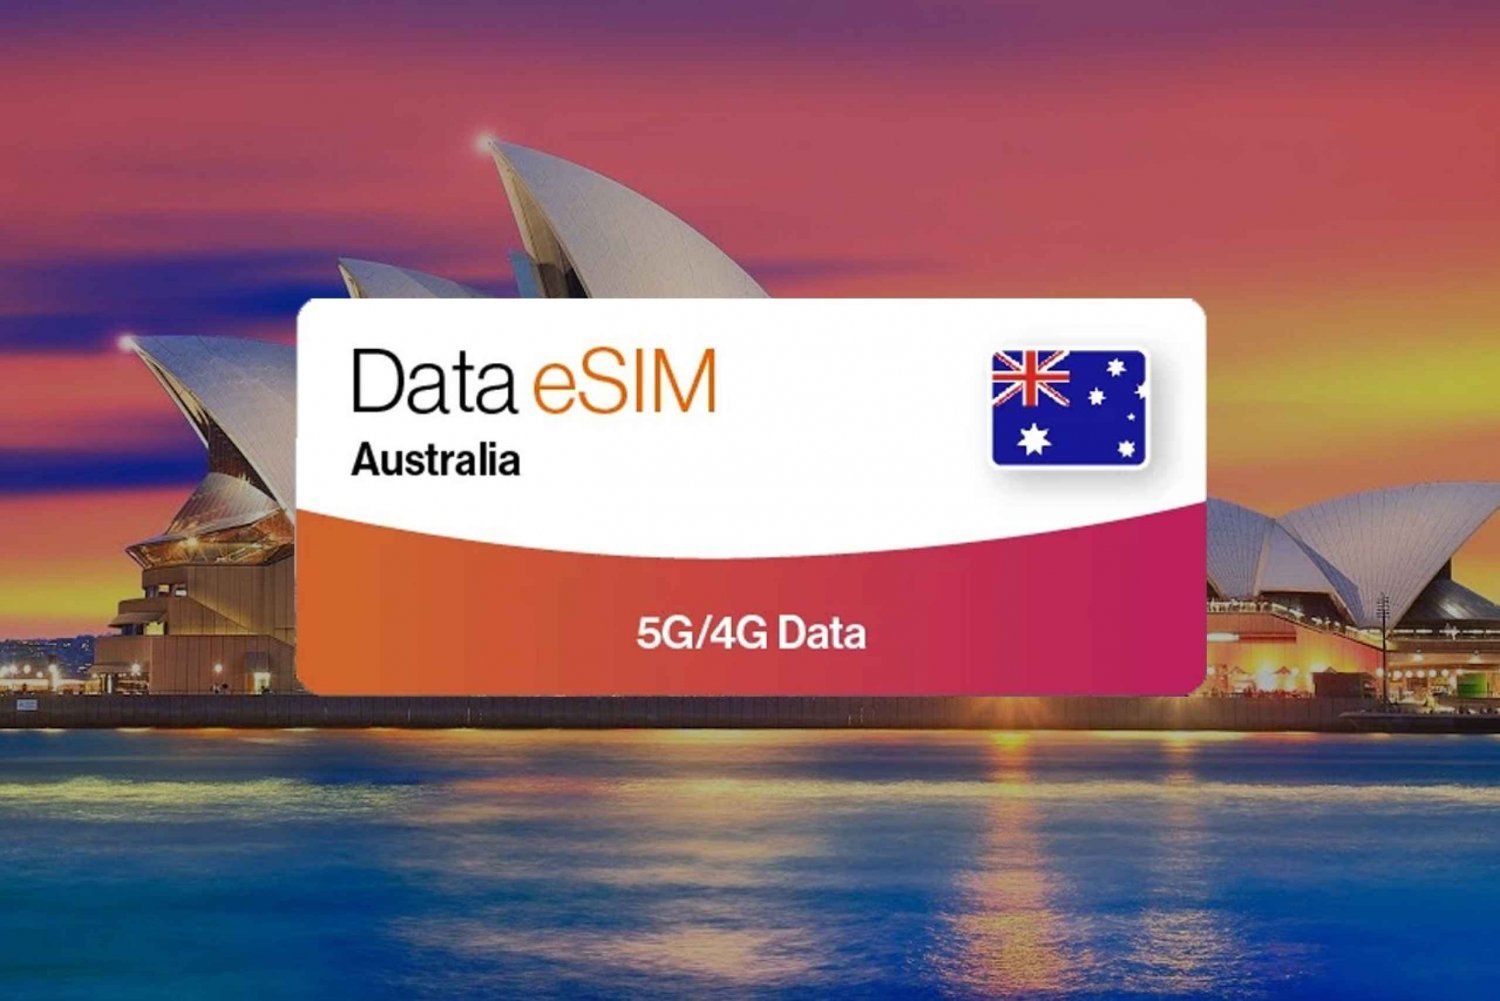 Australia: Tourist eSIM Data Plan